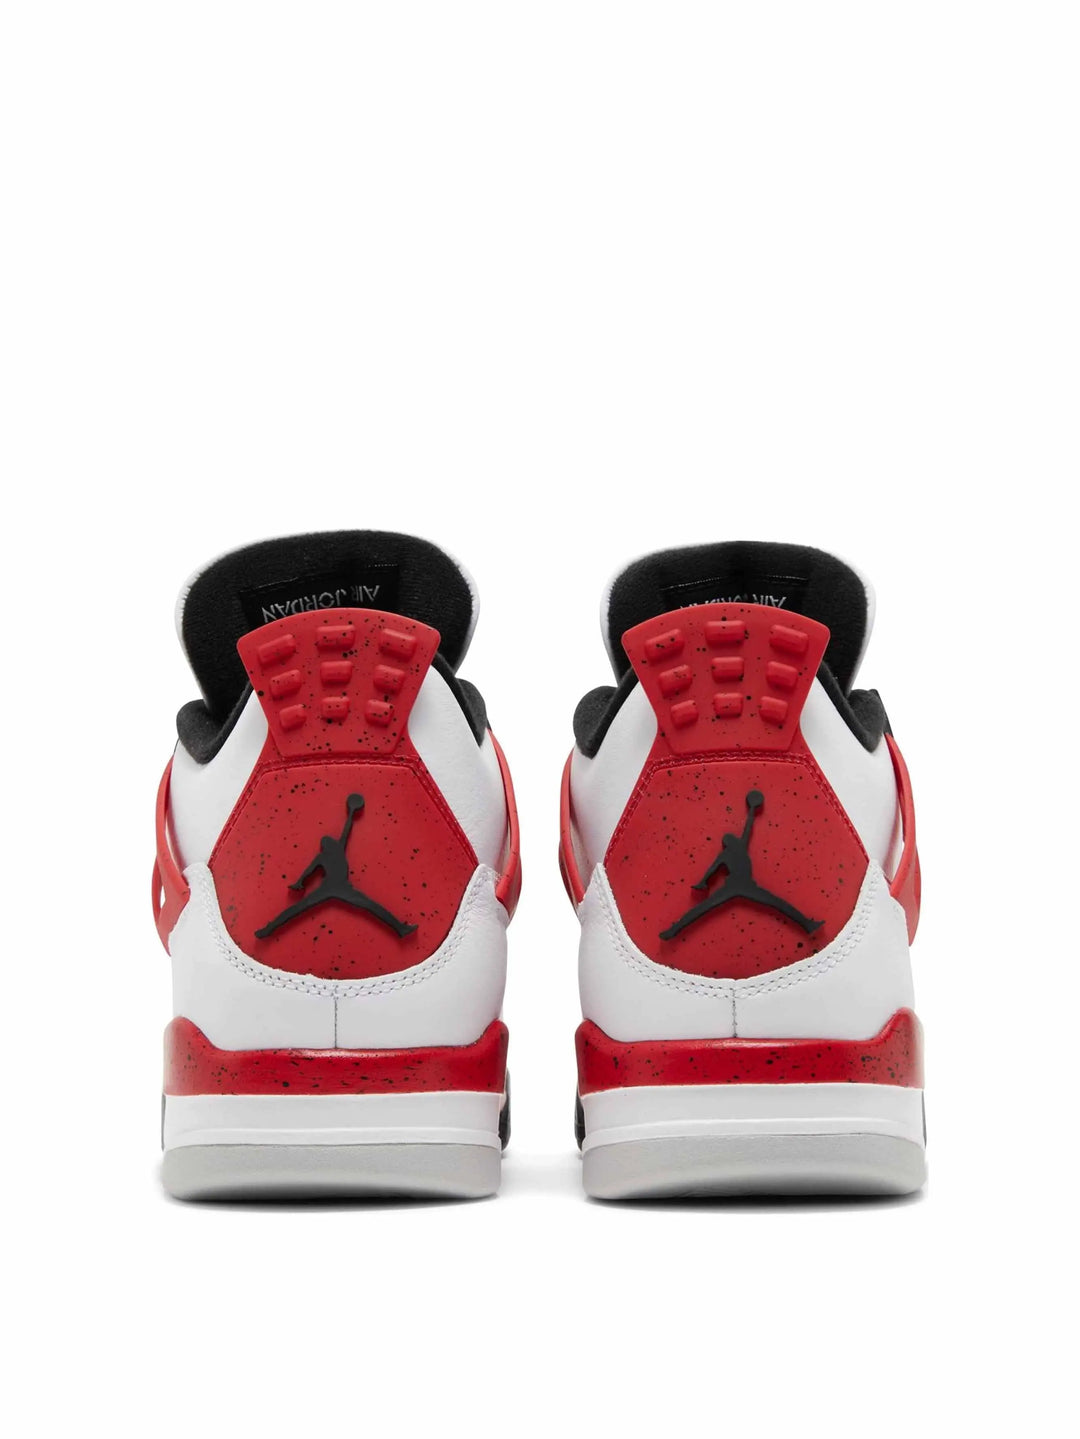 Nike Air Jordan 4 Retro Red Cement - Prior